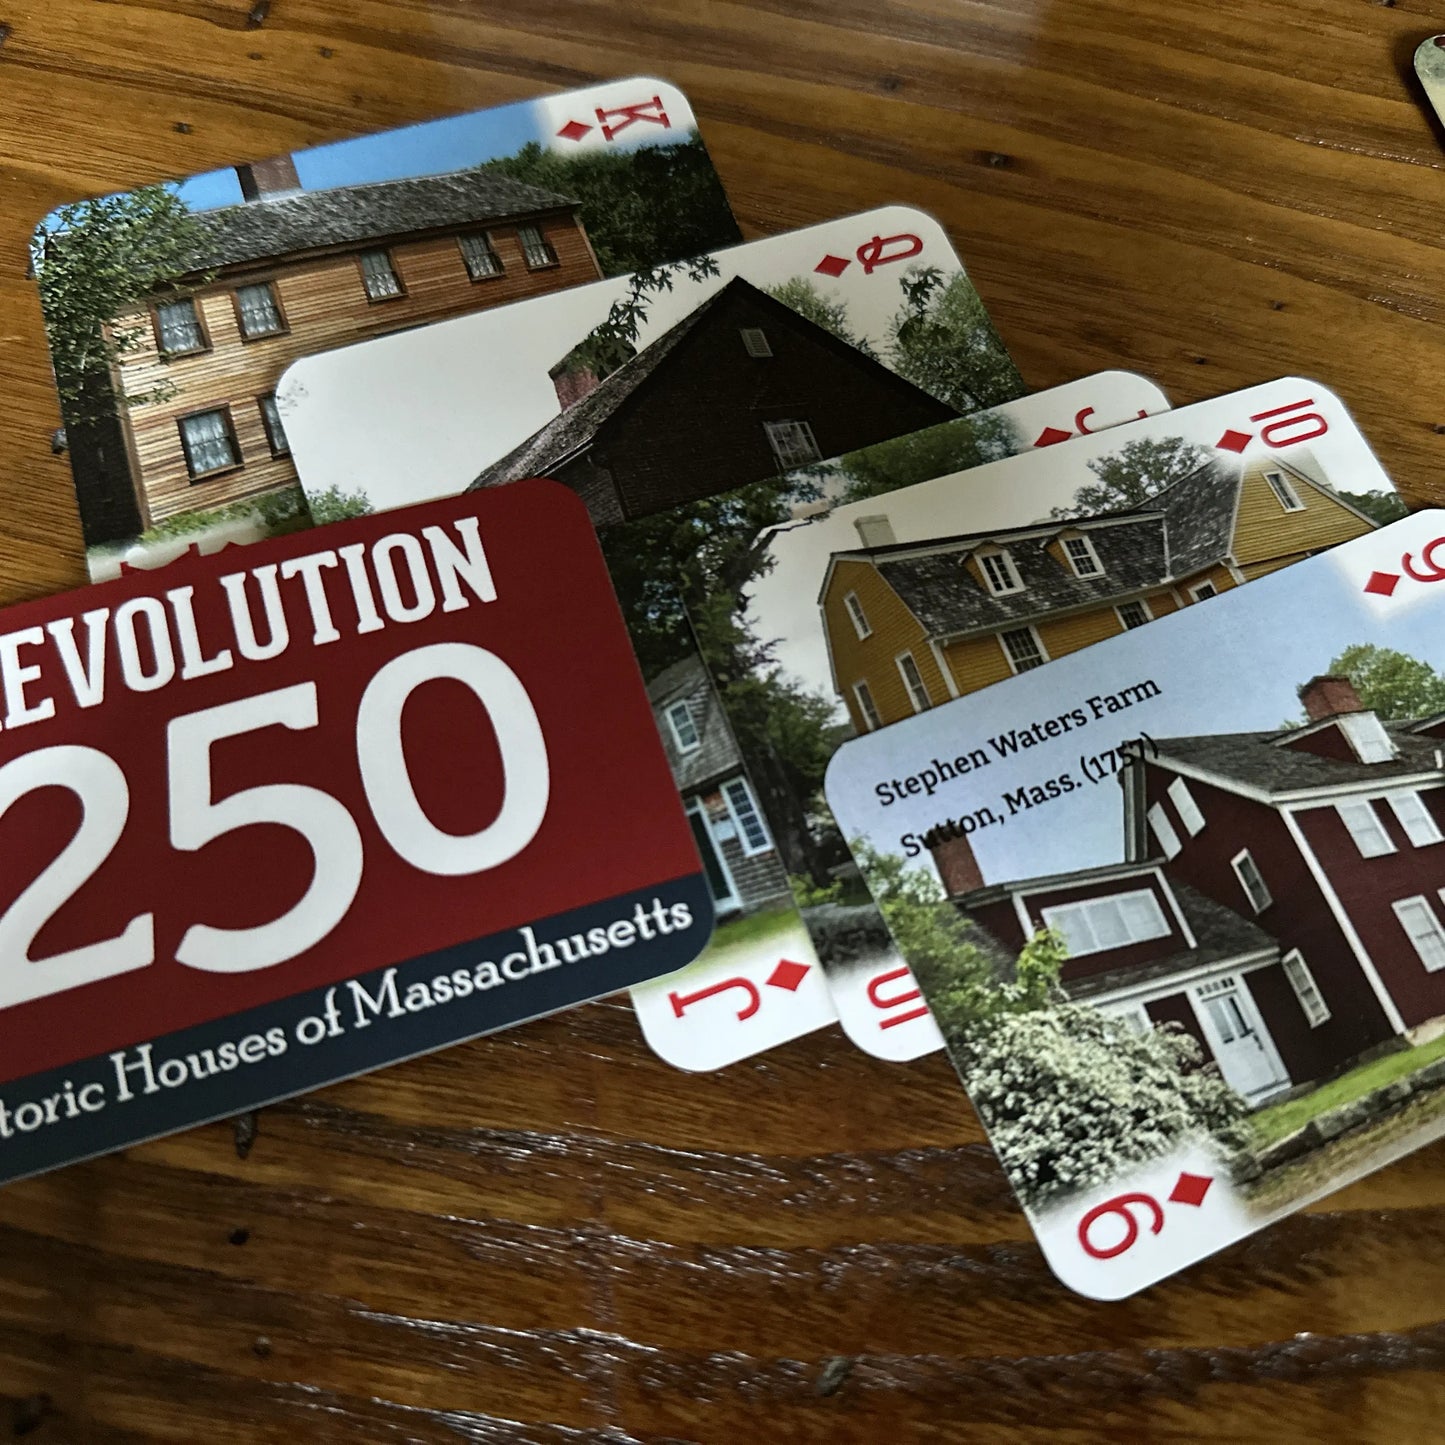 Massachusetts Historic Houses deck of cards for Revolution 250